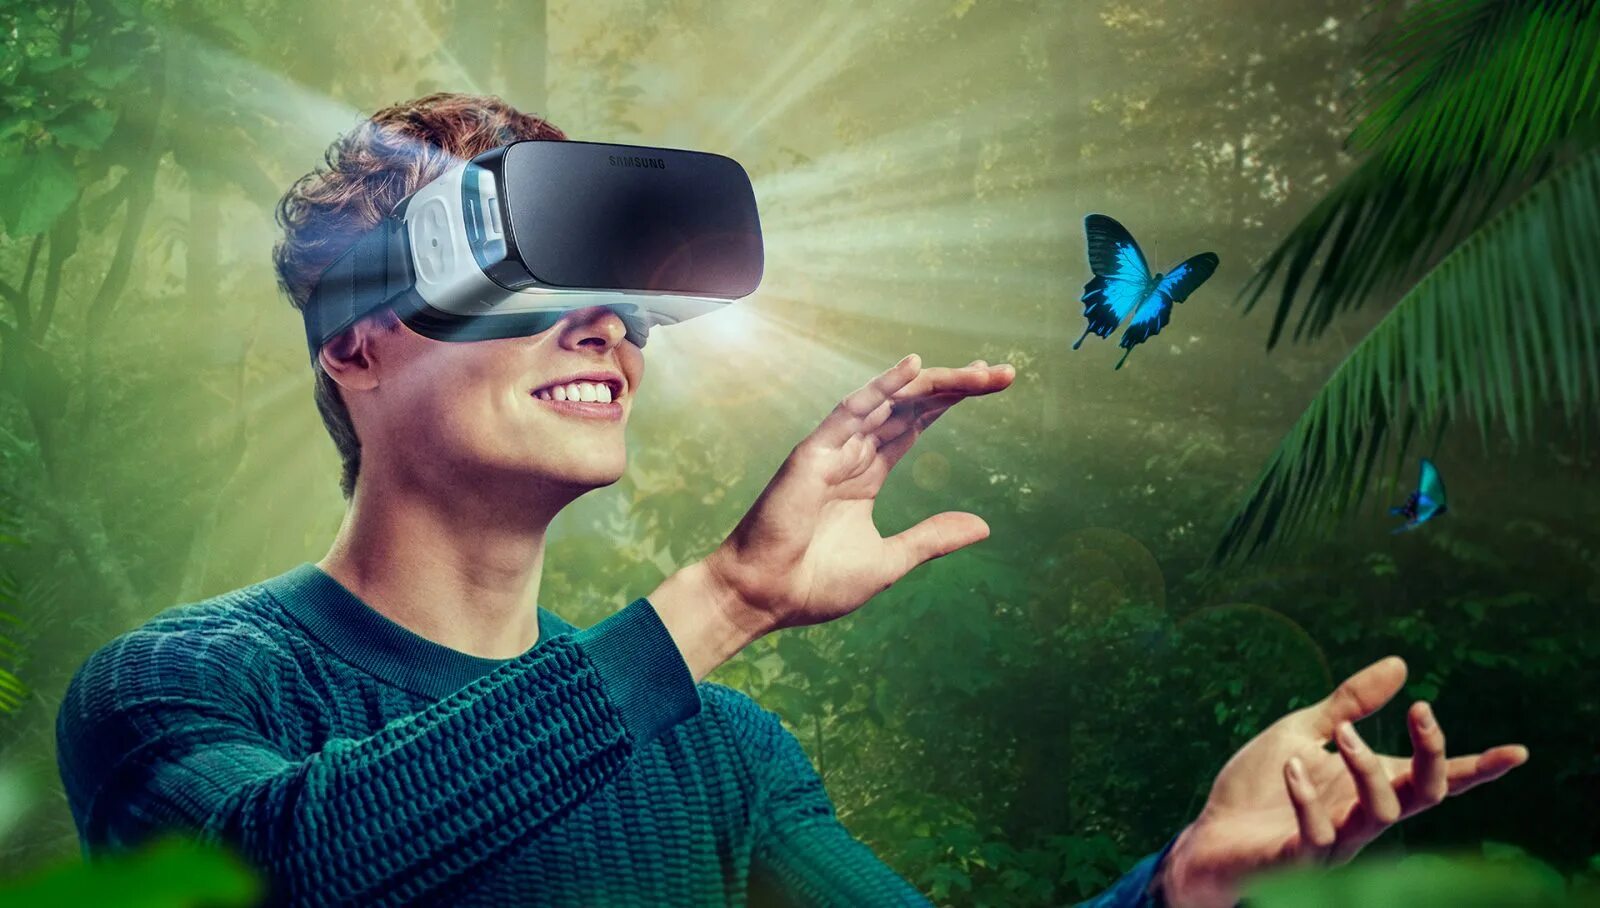 VR виртуальная реальность. Визуальная реальность. Иртуальная реальность. Очки виртуальной реальности на человеке.